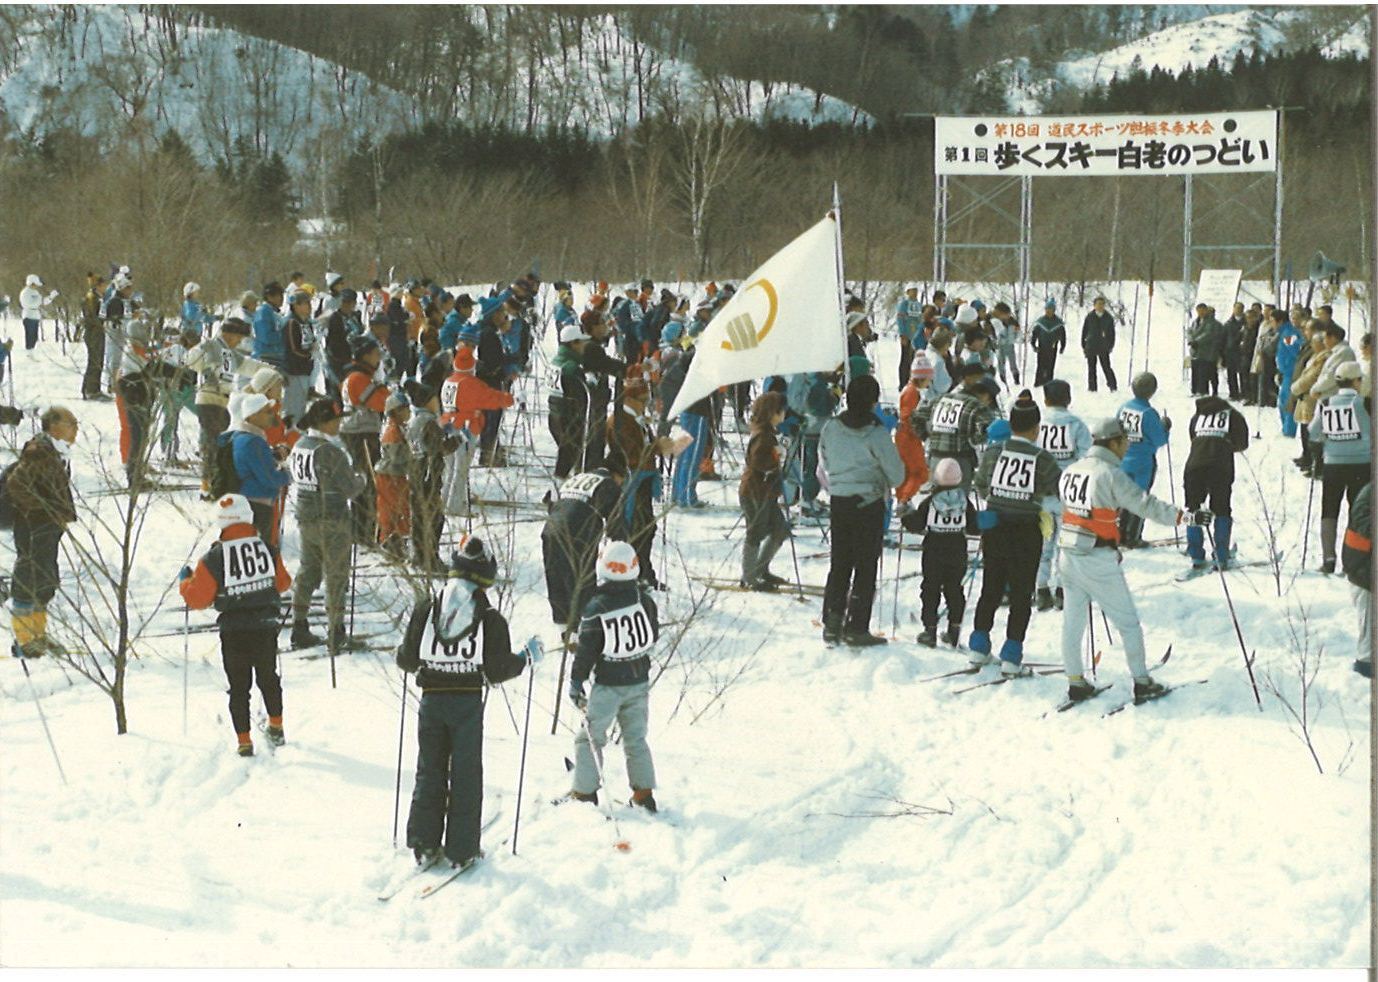 昭和63年第1回歩くスキー白老のつどいの様子の写真